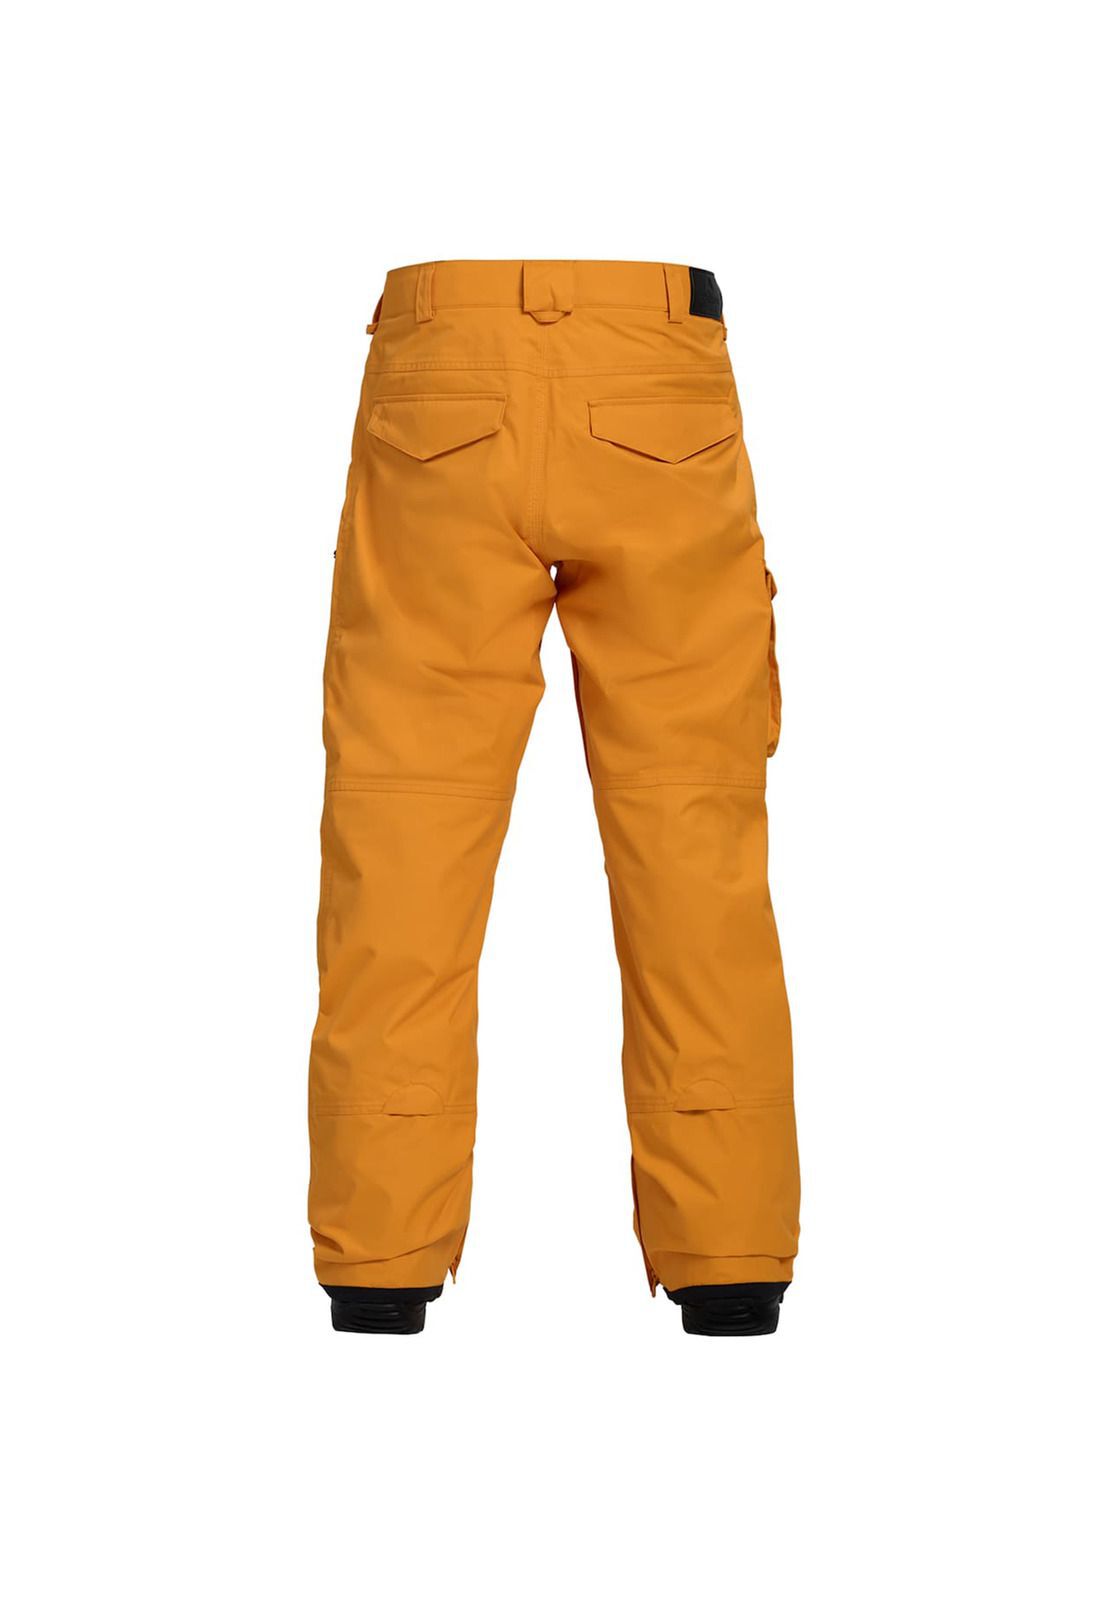 Pantalón de Nieve Hombre Covert - Pantalones y Buzos